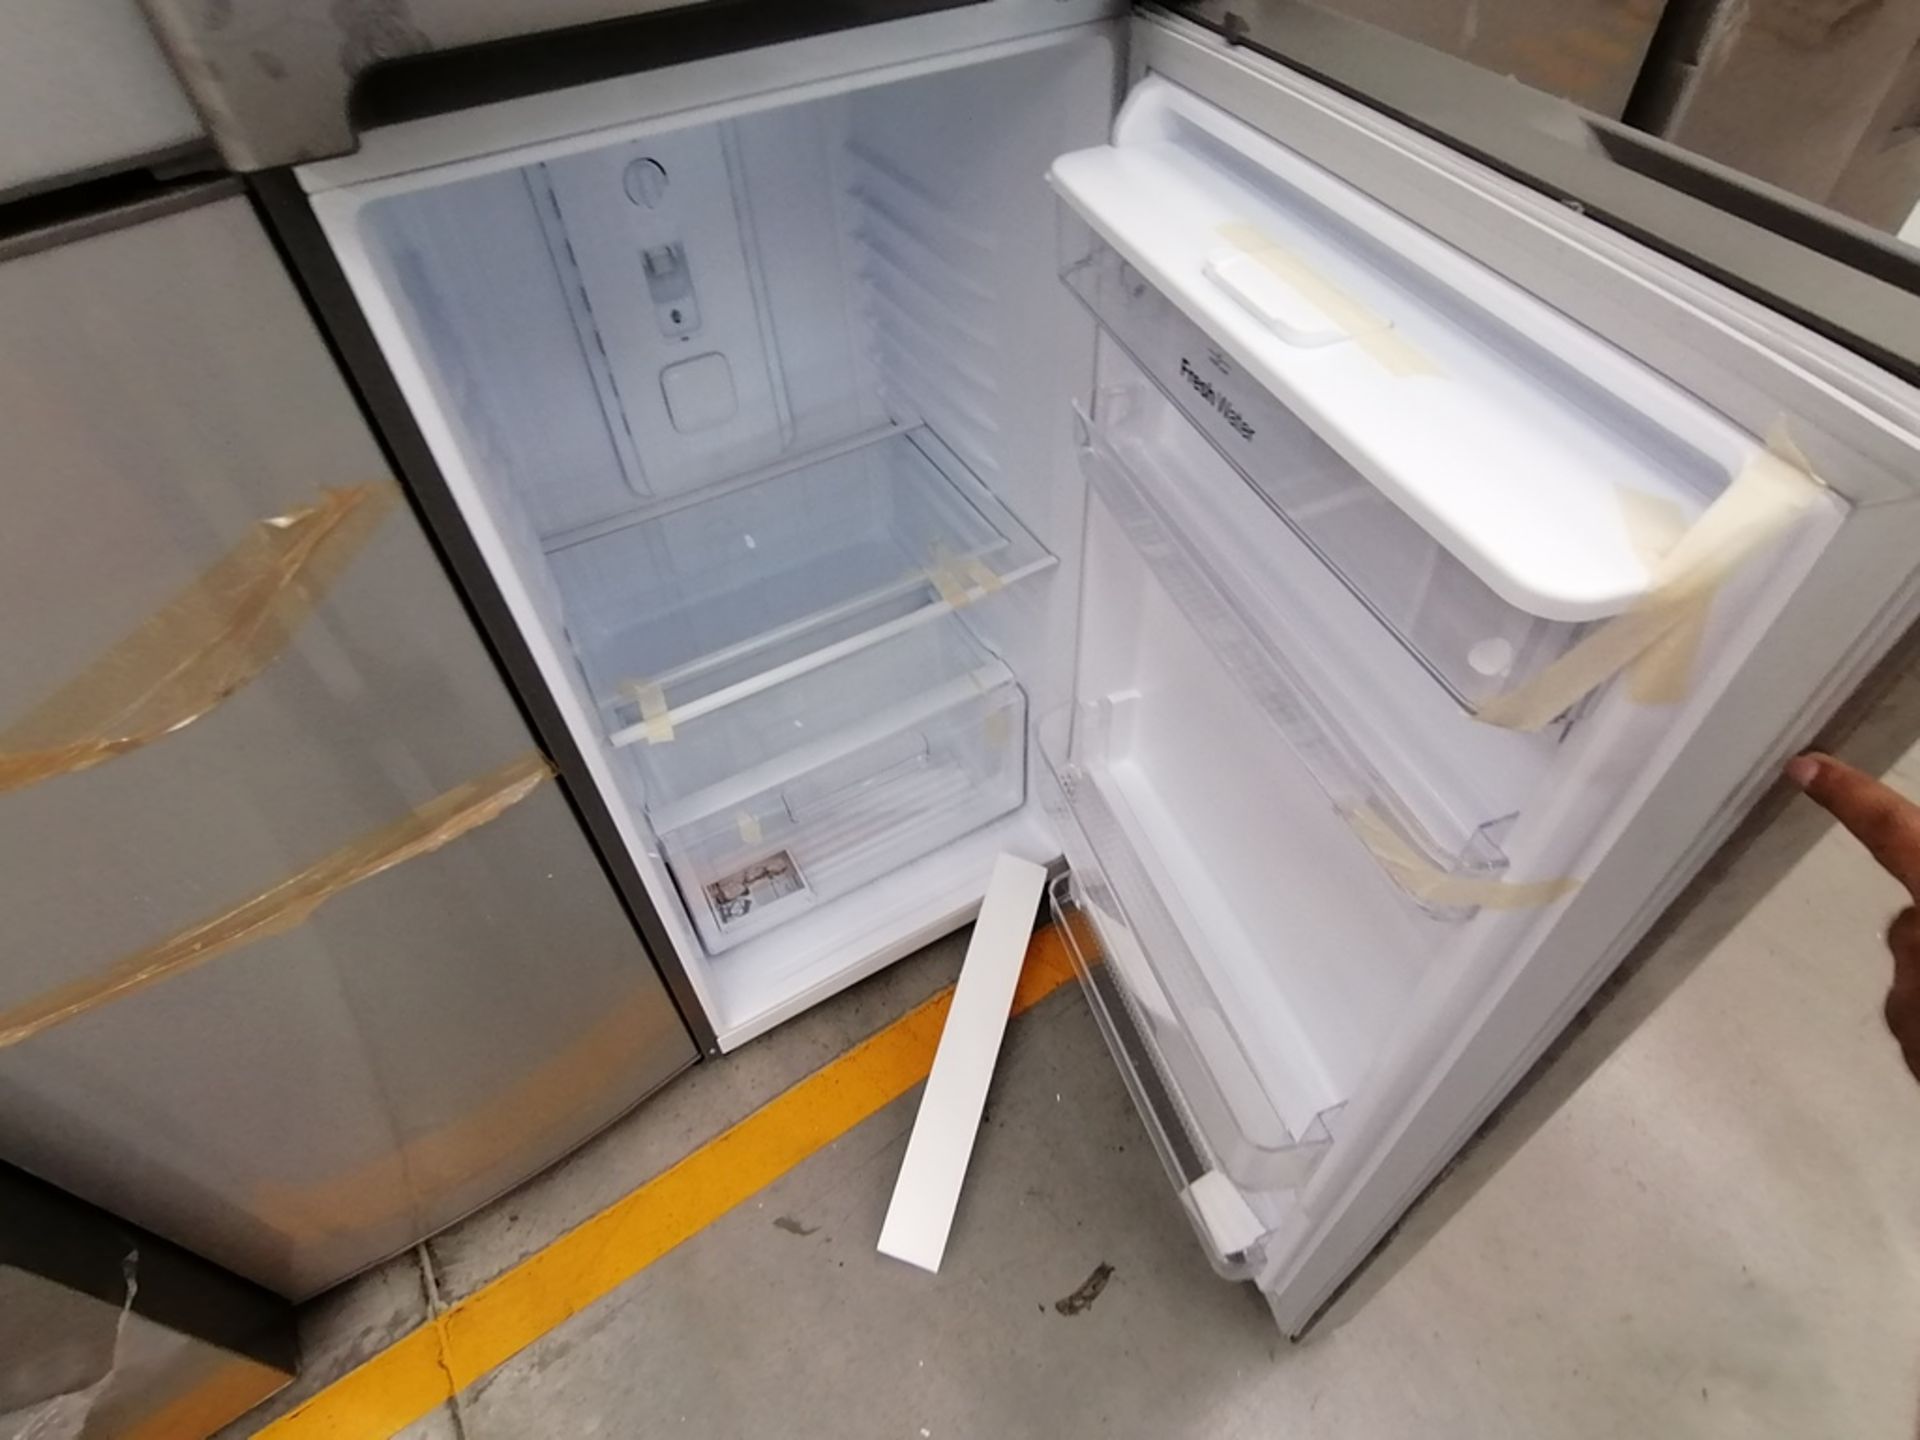 Lote de 2 Refrigeradores, Incluye: 1 Refrigerador con dispensador de agua, Marca Winia, Modelo DFR4 - Image 7 of 16